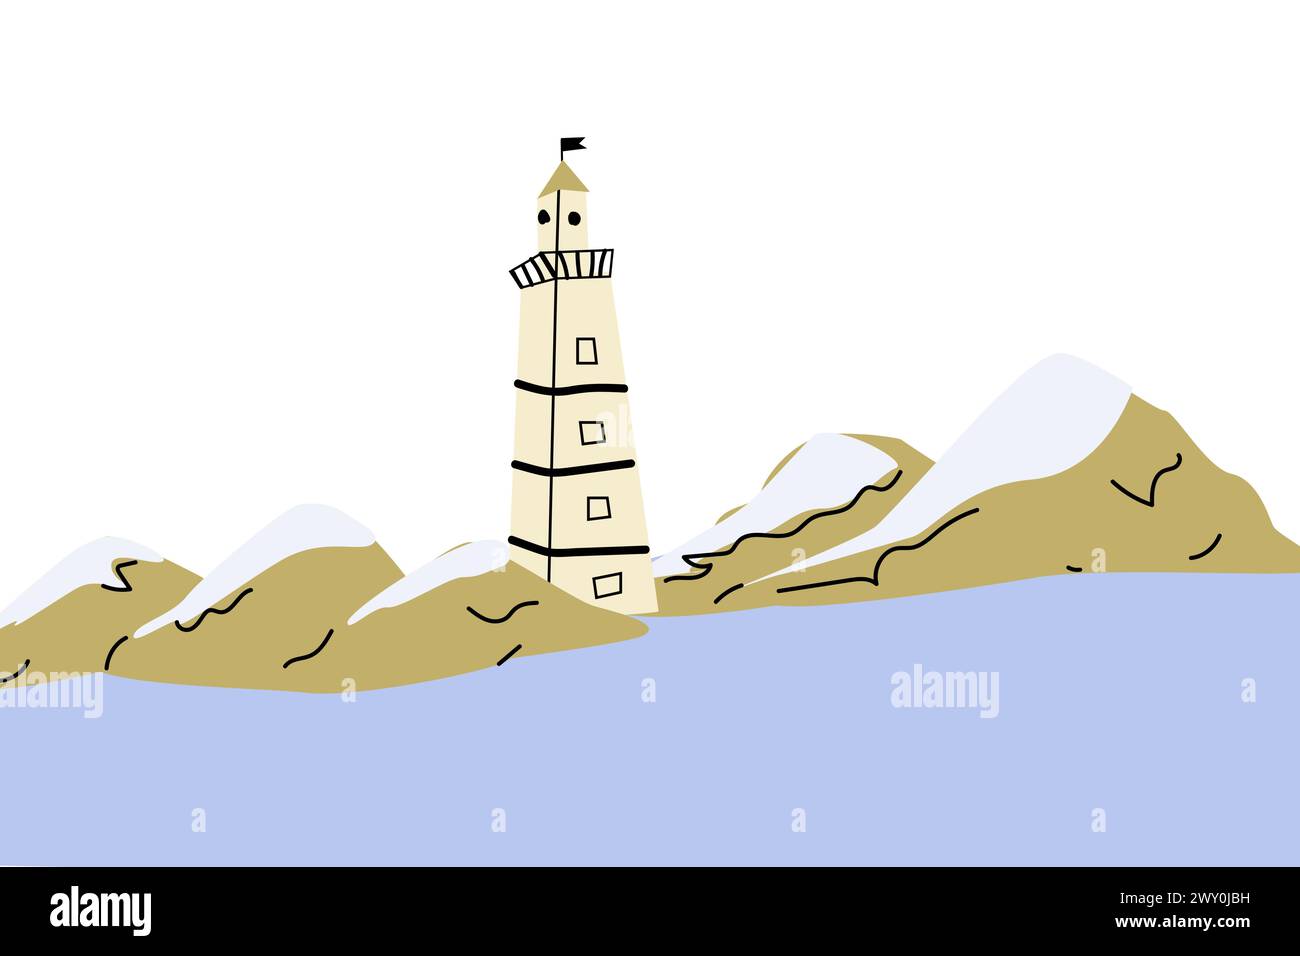 Niedlicher Leuchtturm in der Nähe von Bergfelsen an der Küste - Zeichentrickfilm-Illustration. Vektor-Illustration von wunderschönem Leuchtturm und Felsen. Doodle Marine AR Stock Vektor